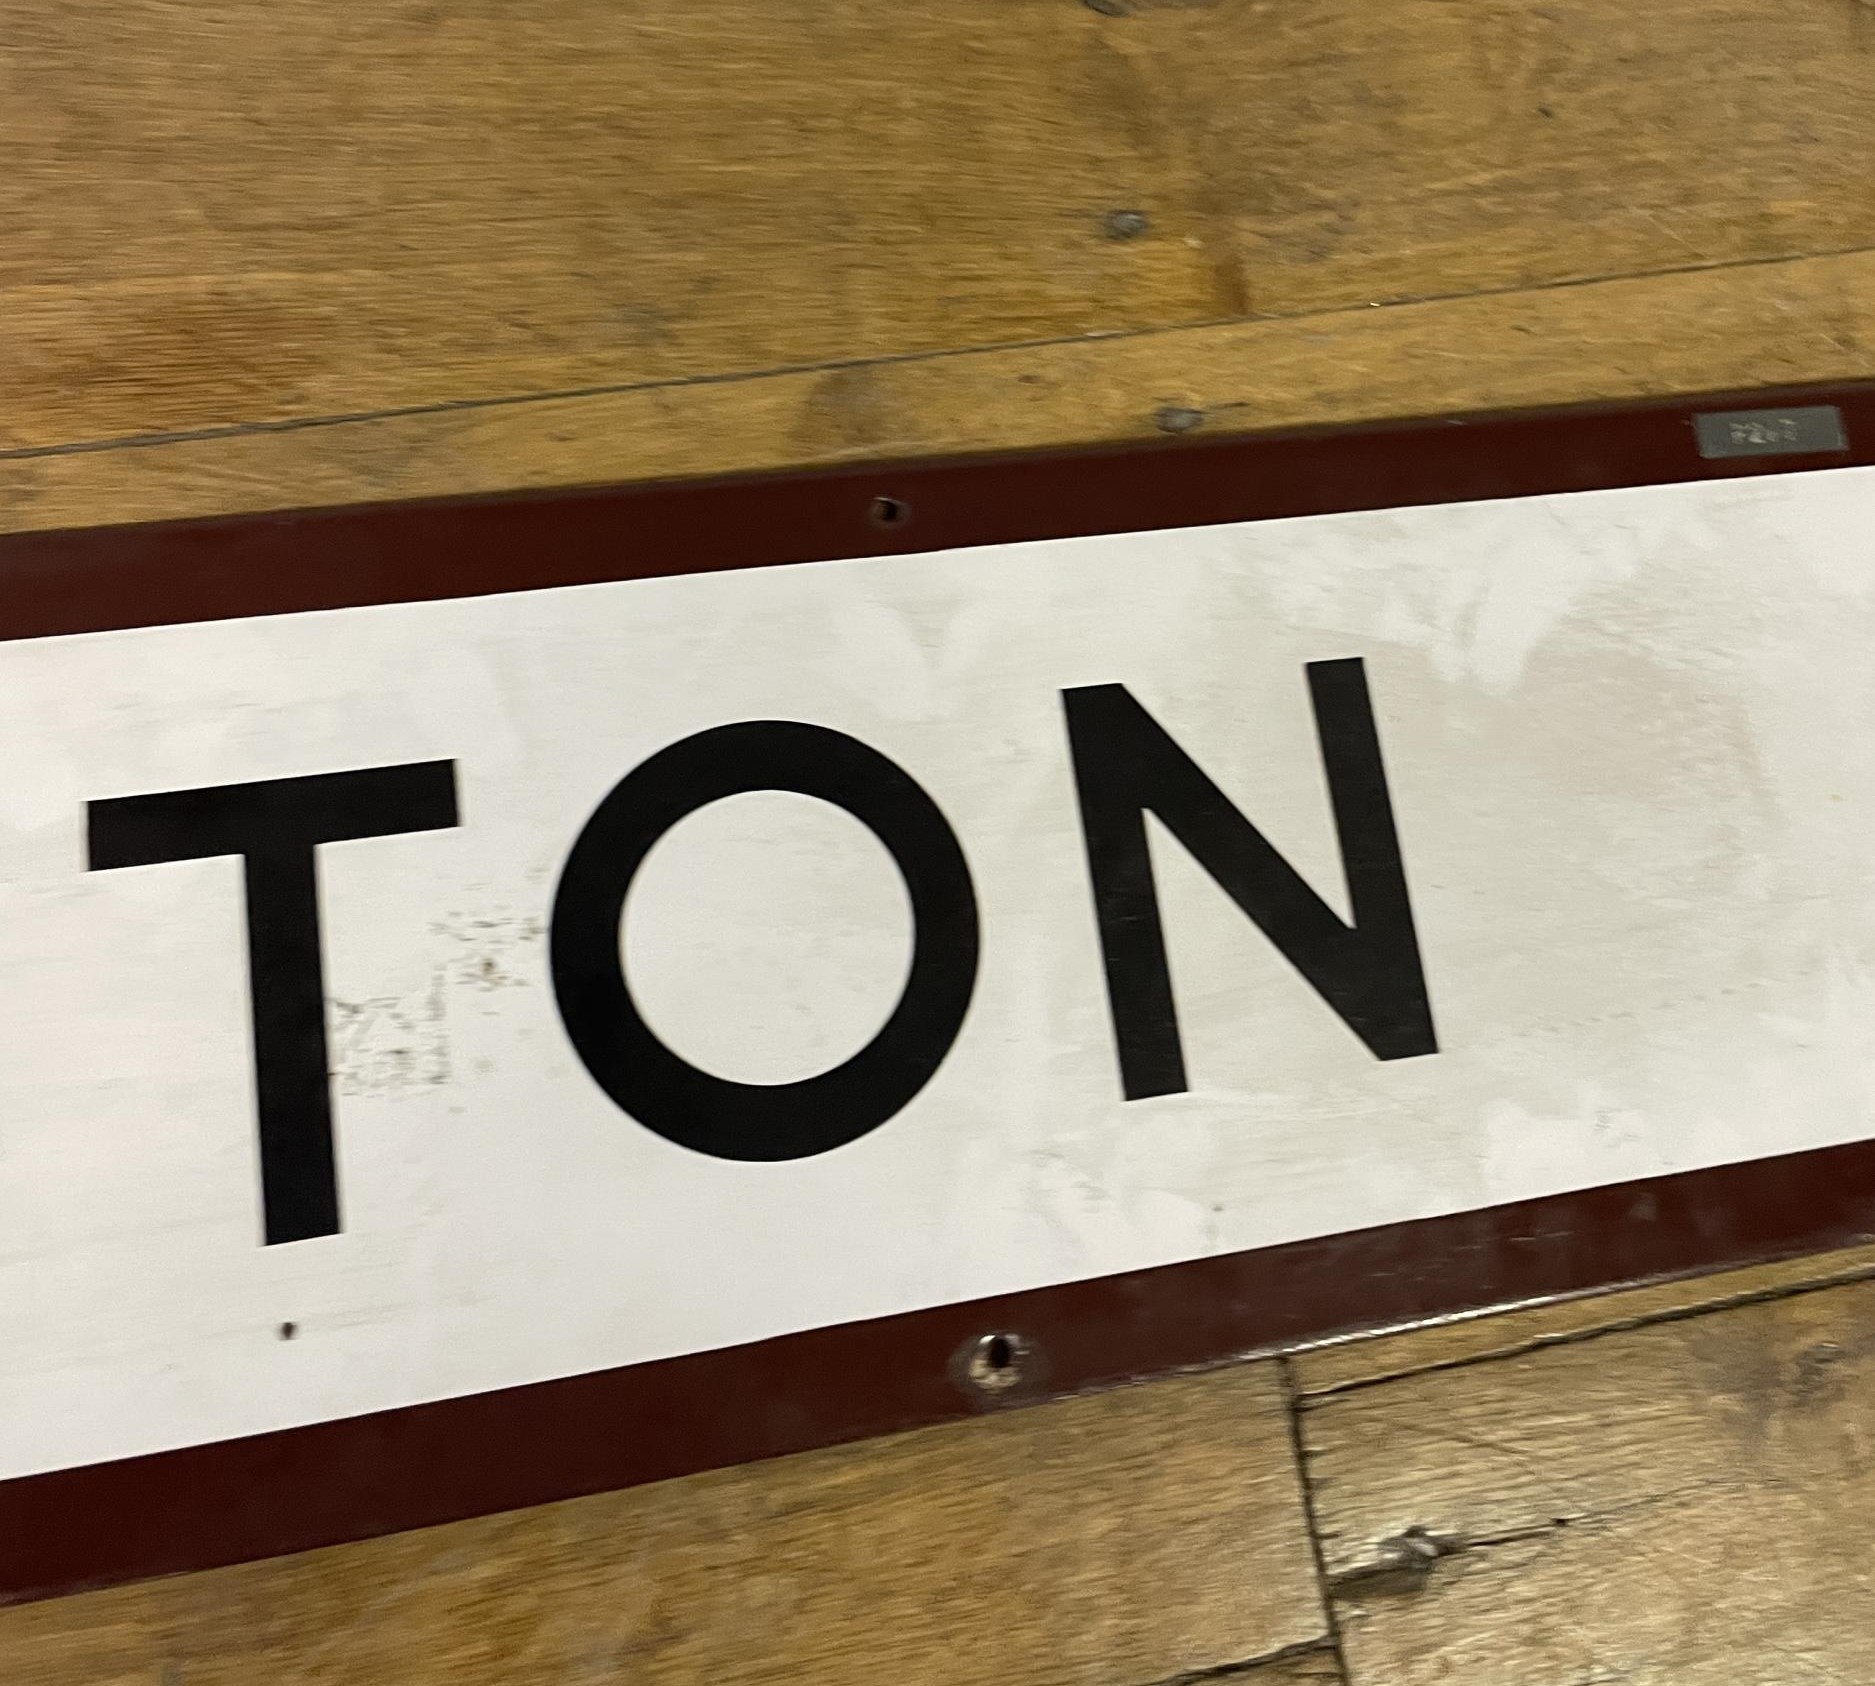 A London Underground enamel sign, Euston, 23 x 114 cm - Image 5 of 11